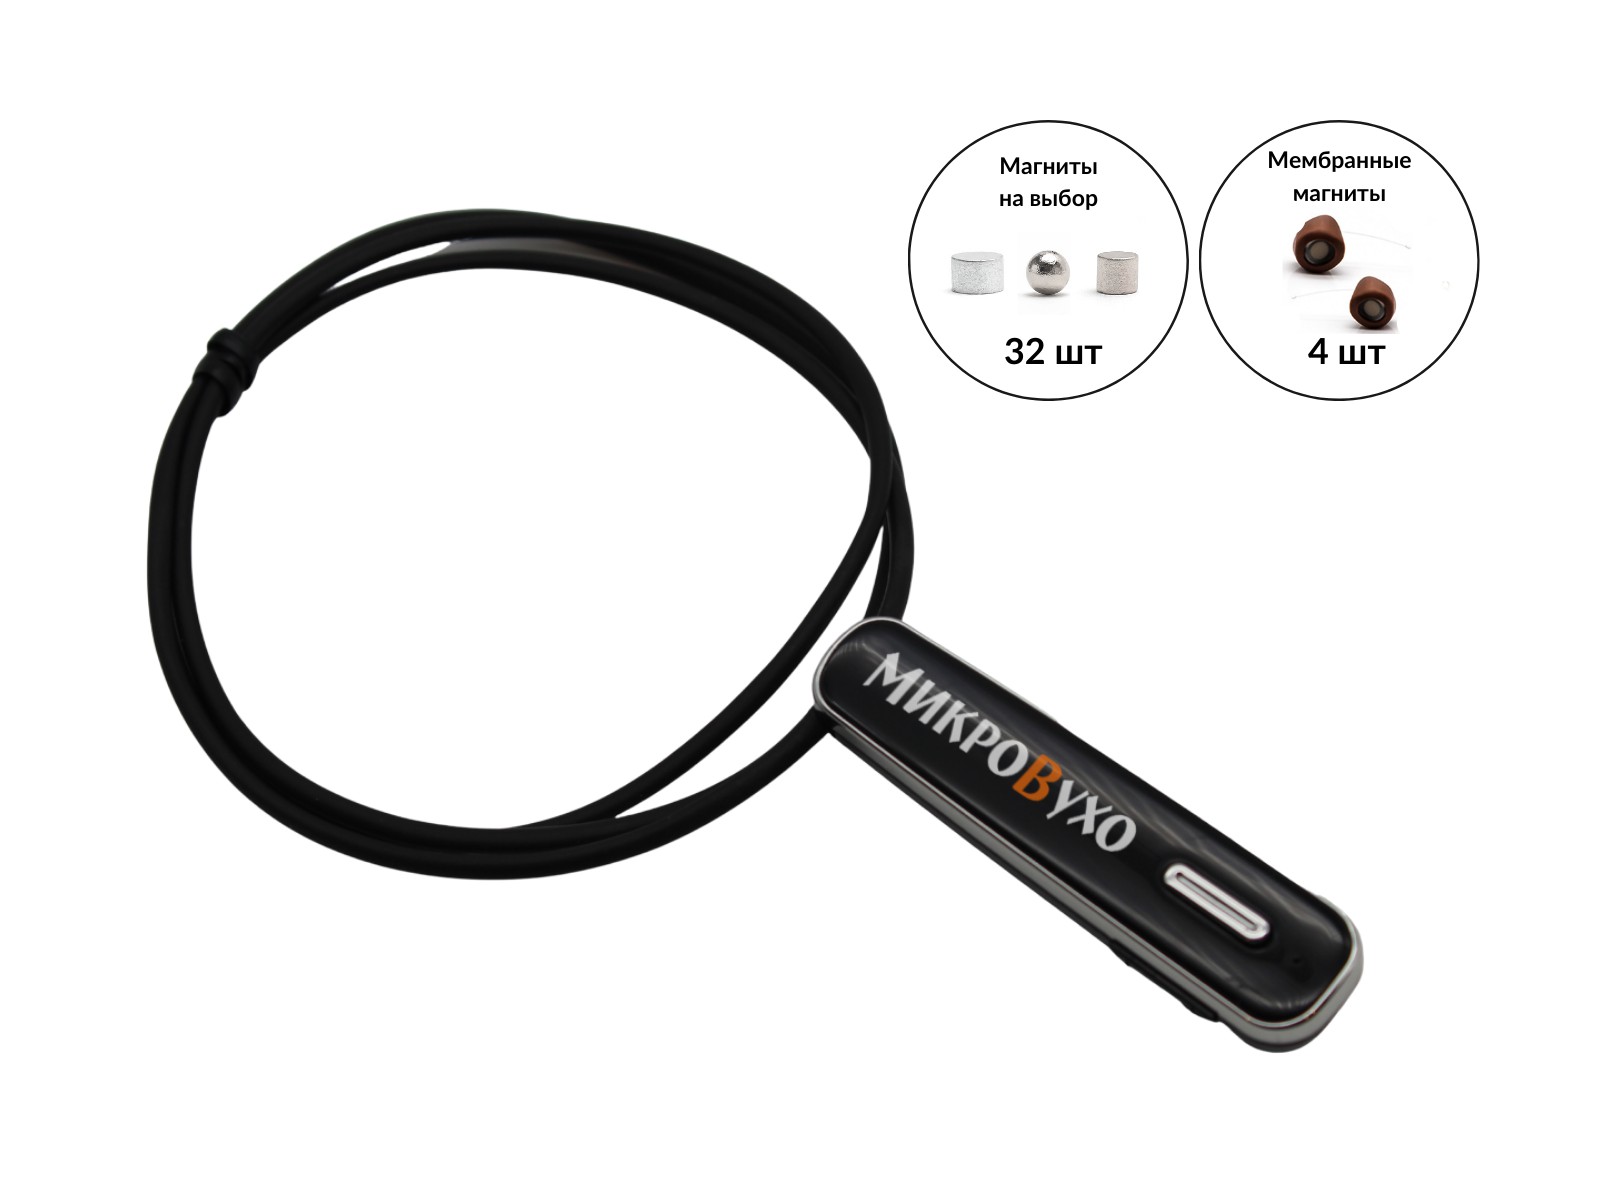 Гарнитура Bluetooth Premier Lite с магнитными микронаушниками 2 мм - изображение